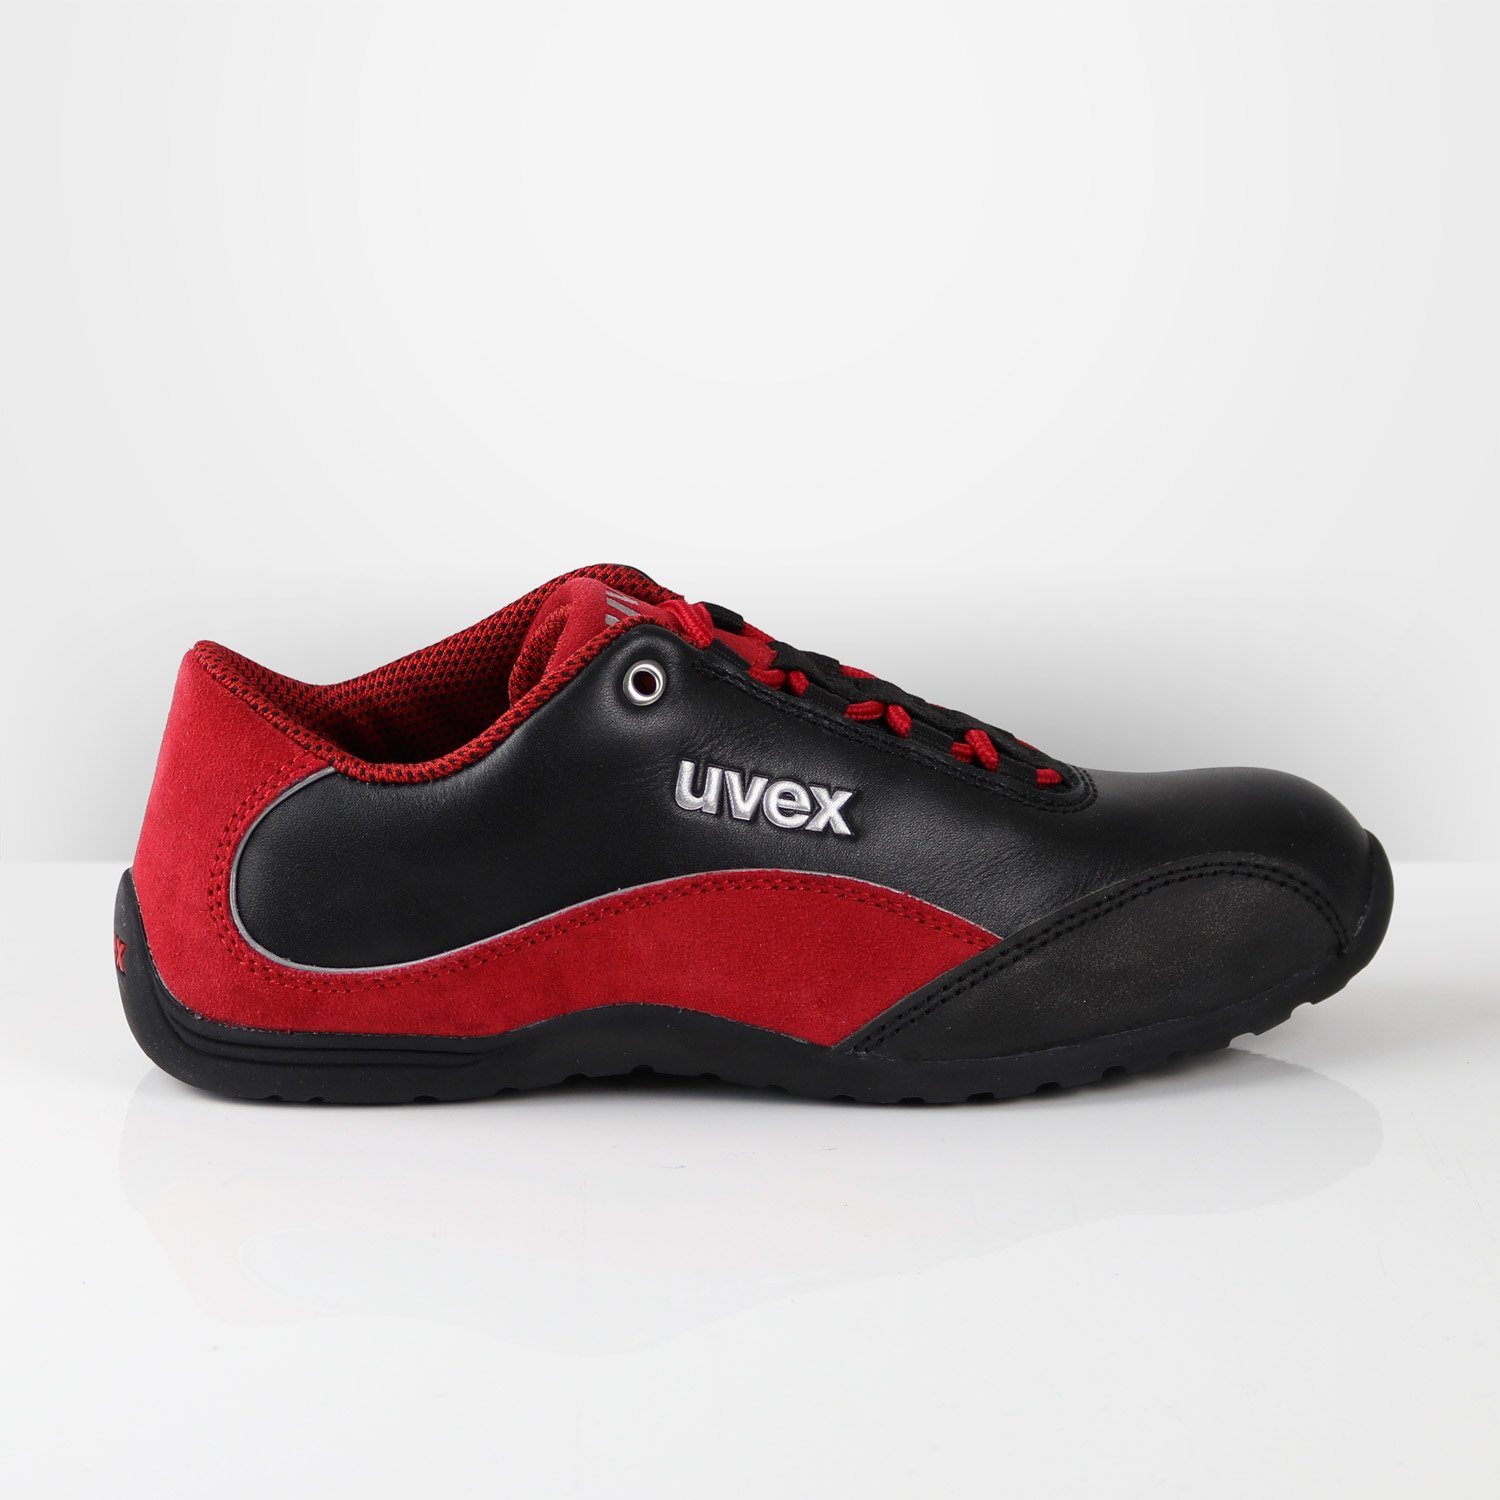 Chaussures de sécurité pour Homme Uvex 